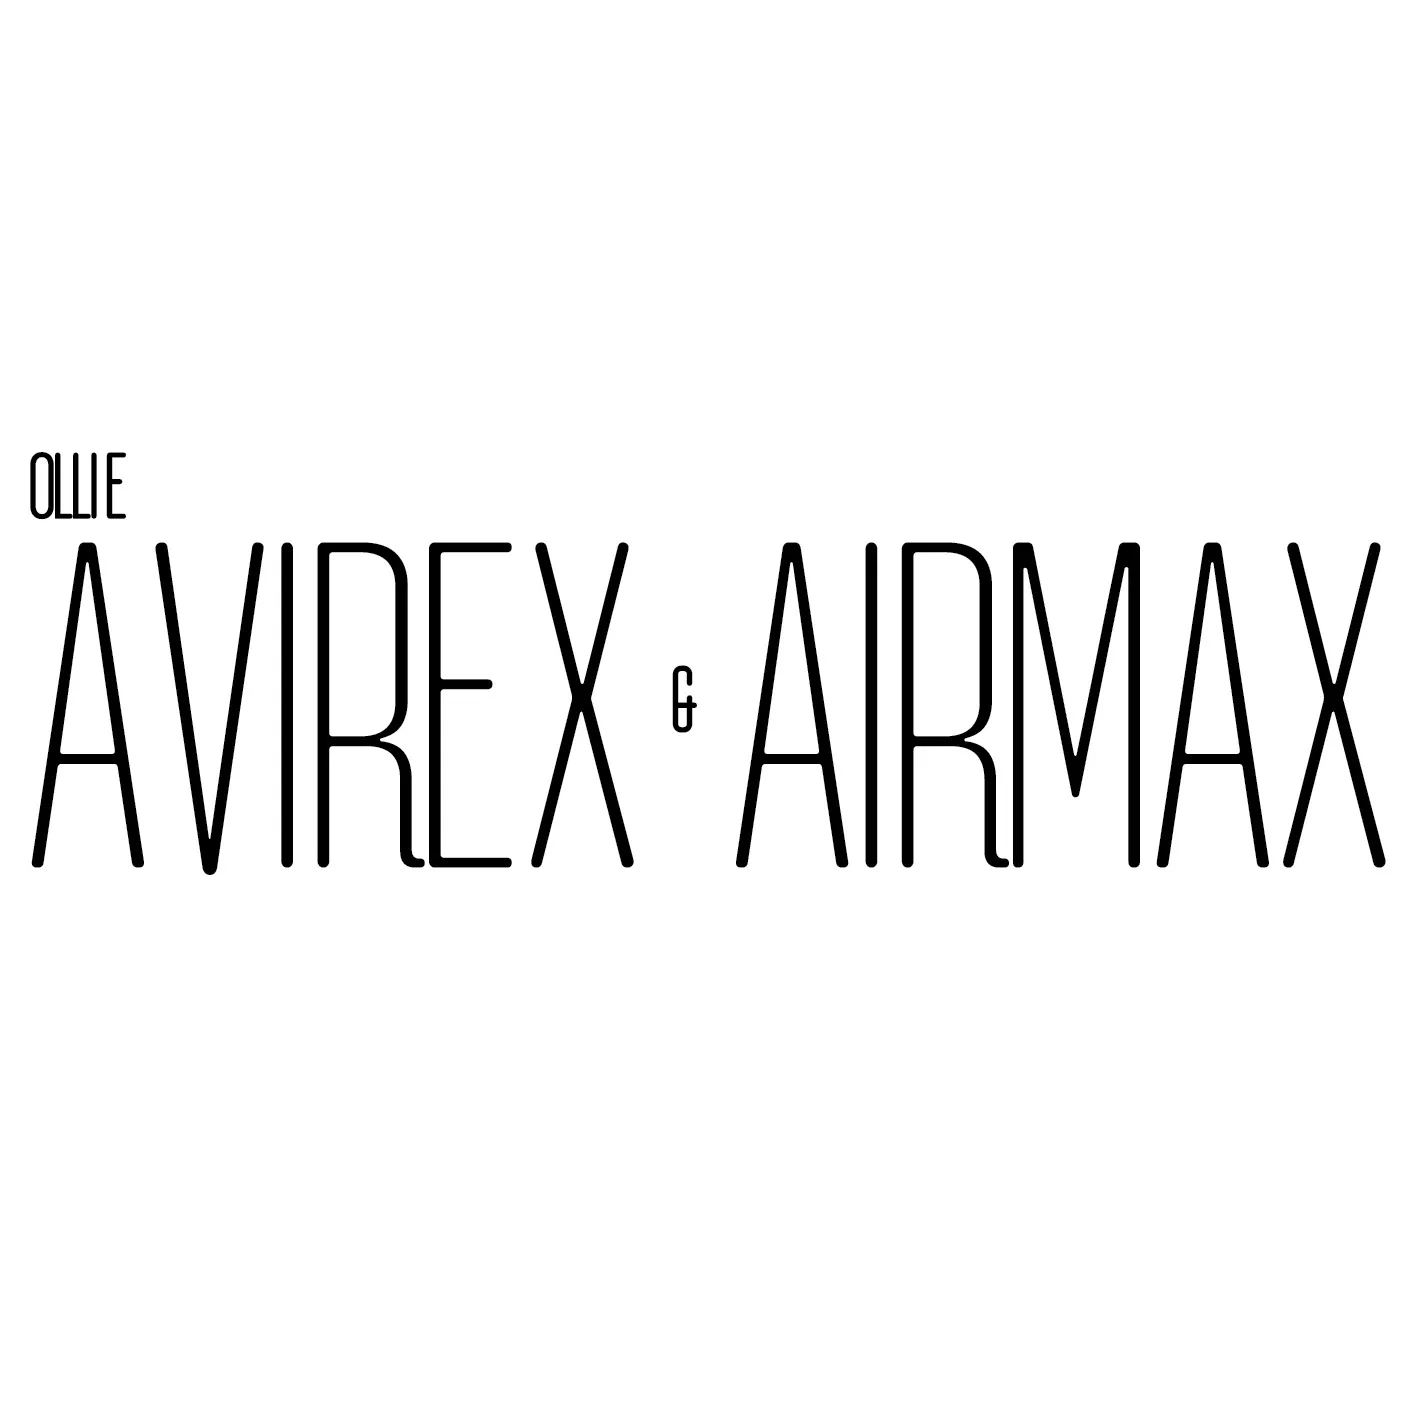 Ollie AvirexAirmax front